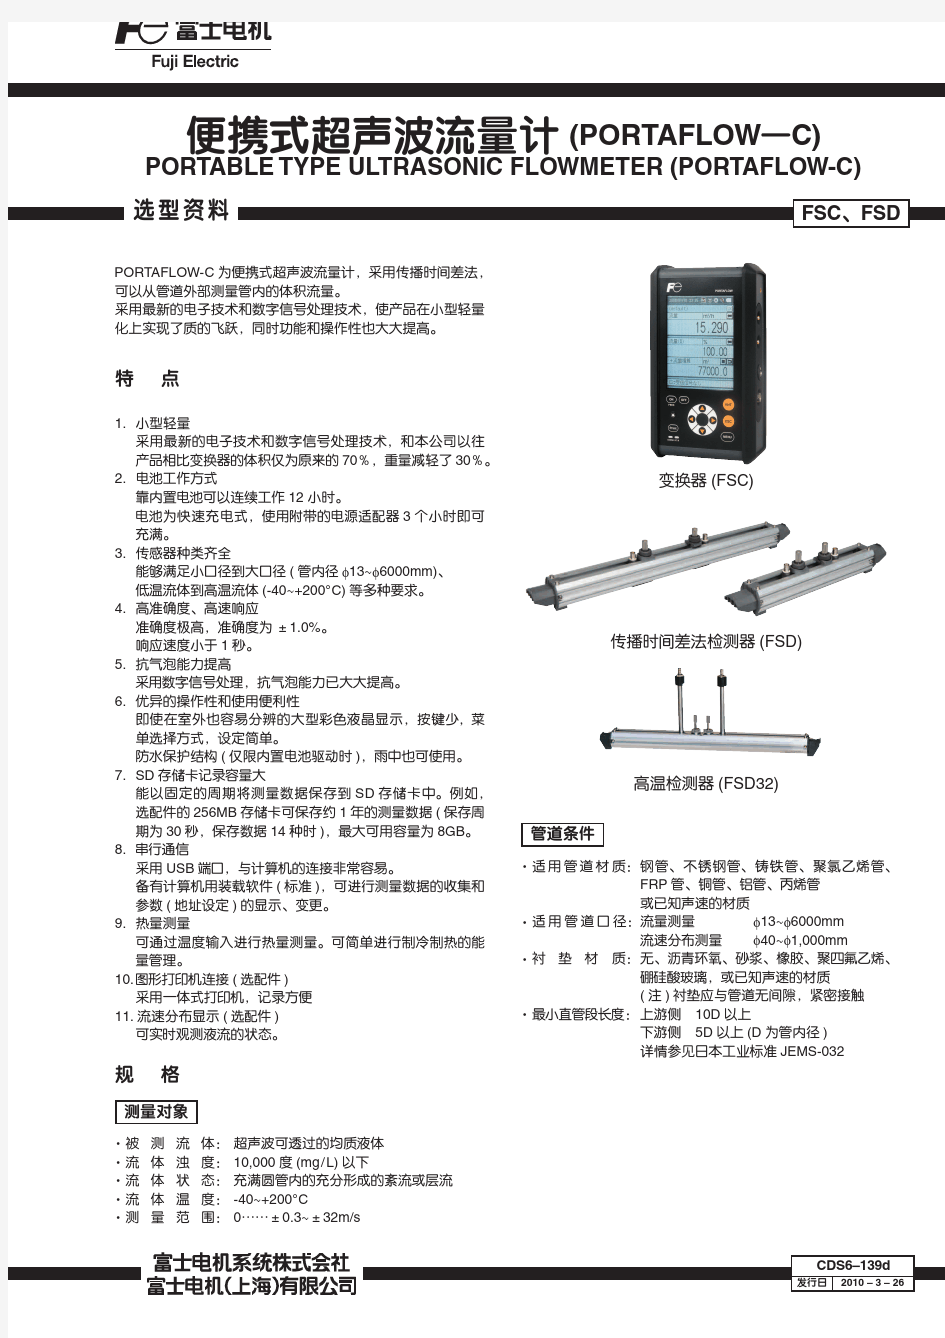 FSC便携式超声波流量计中文规格书2011